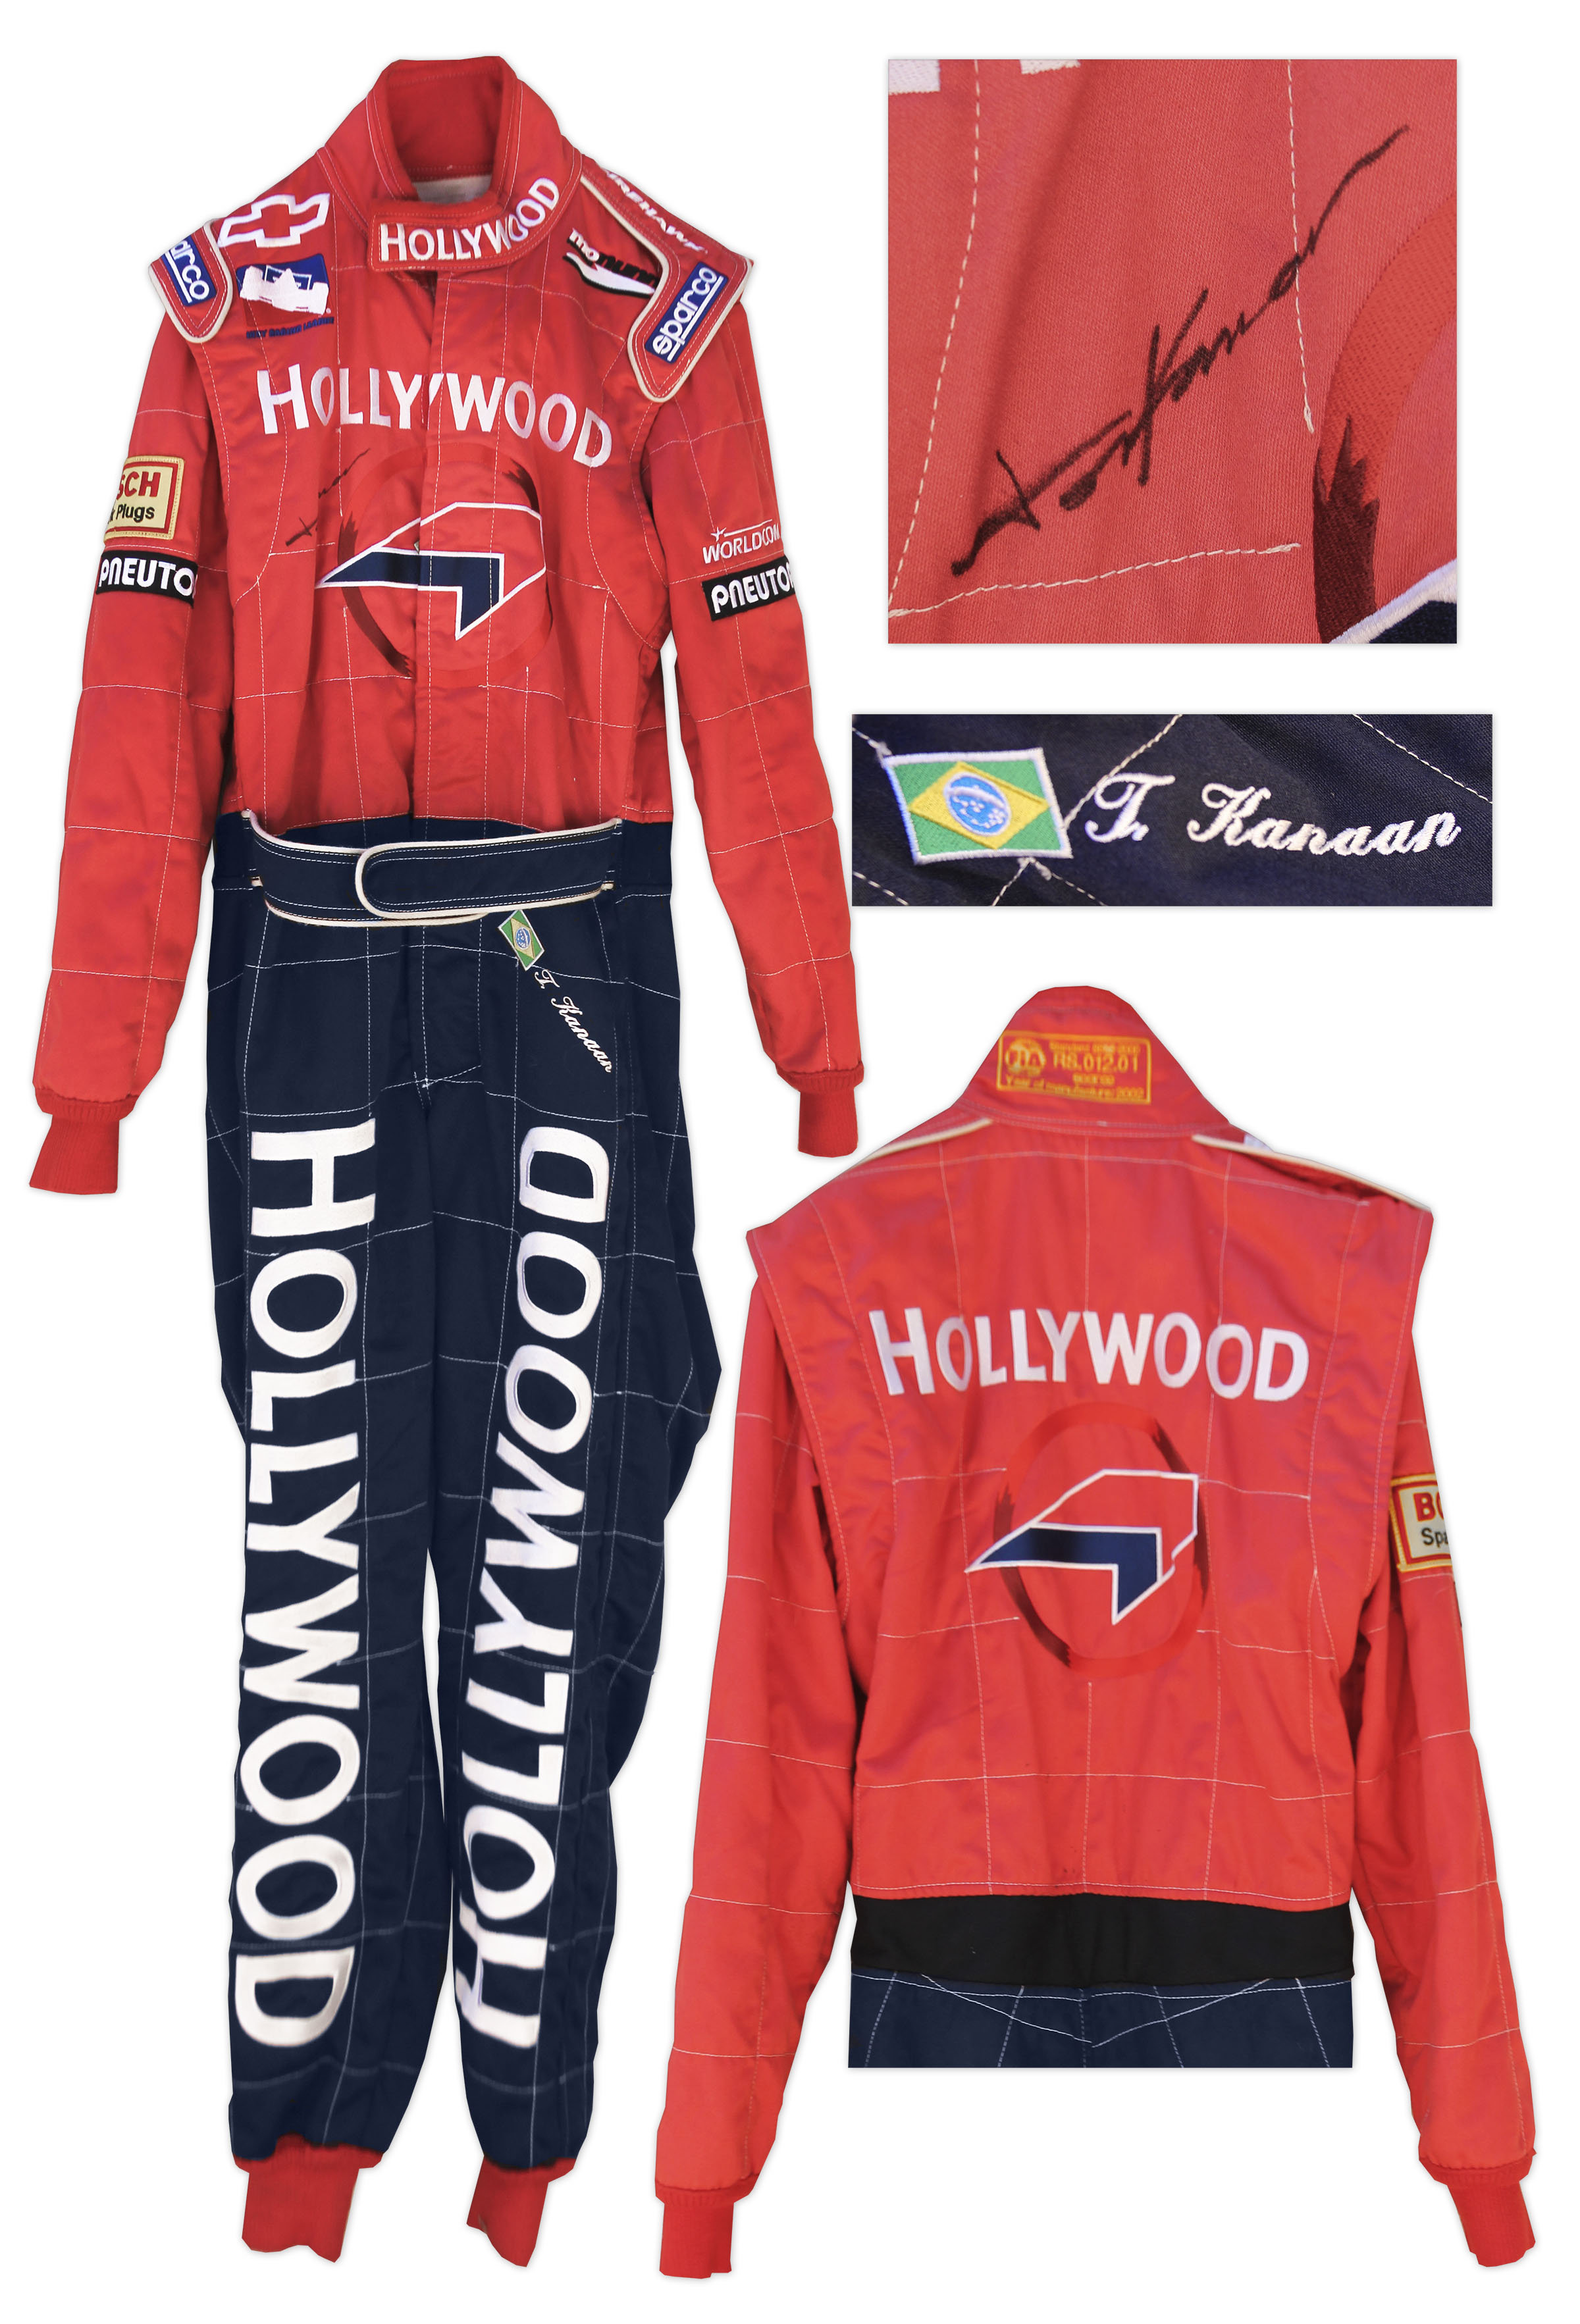 Tony Kanaan Racing Suit